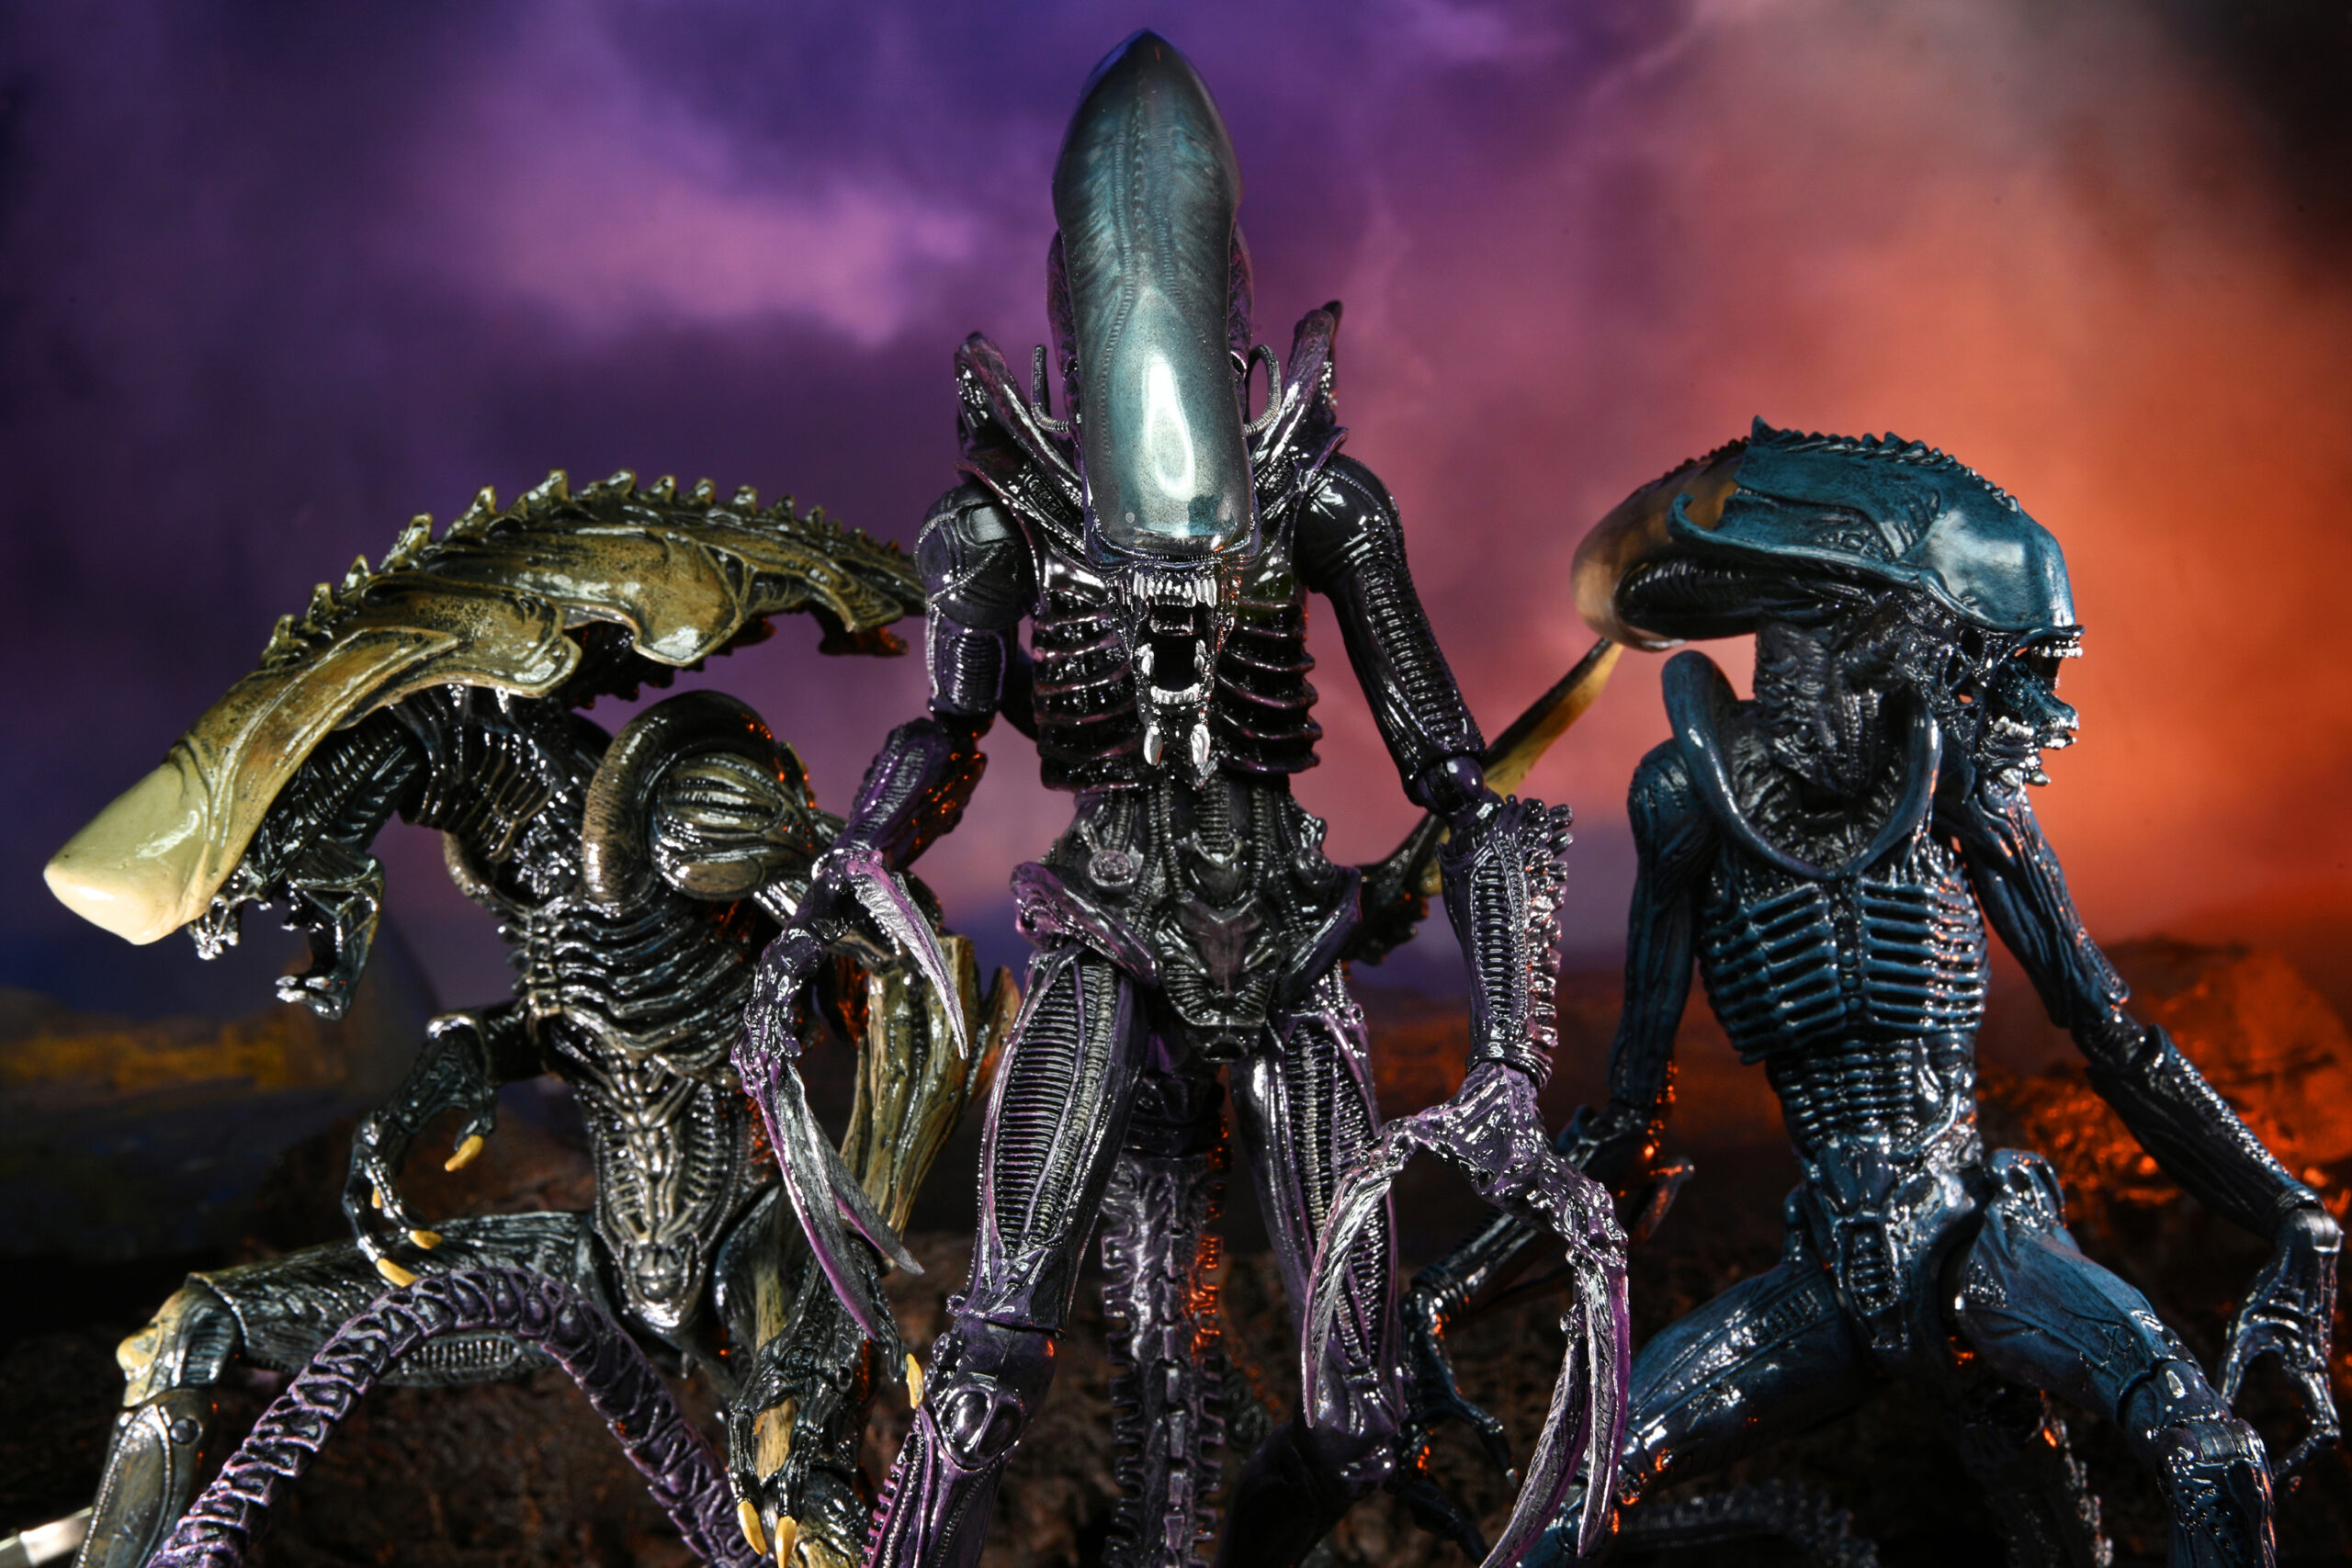 aliens vs predator toys